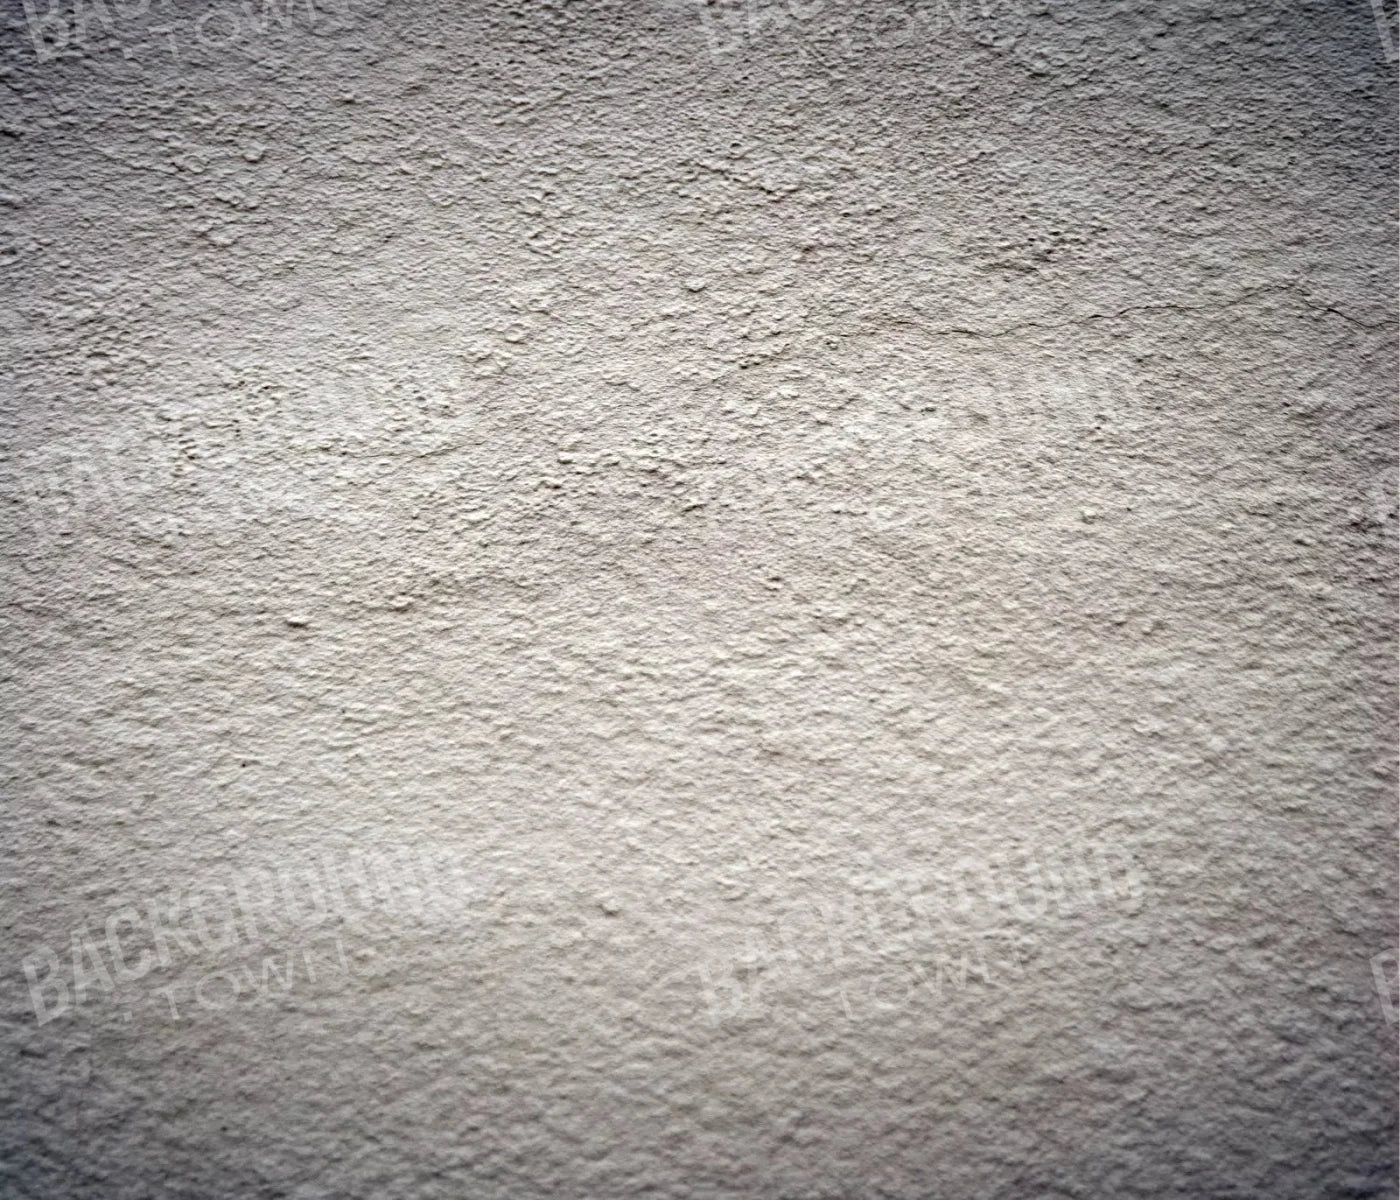 Concrete Jungles 12X10 Ultracloth ( 144 X 120 Inch ) Backdrop